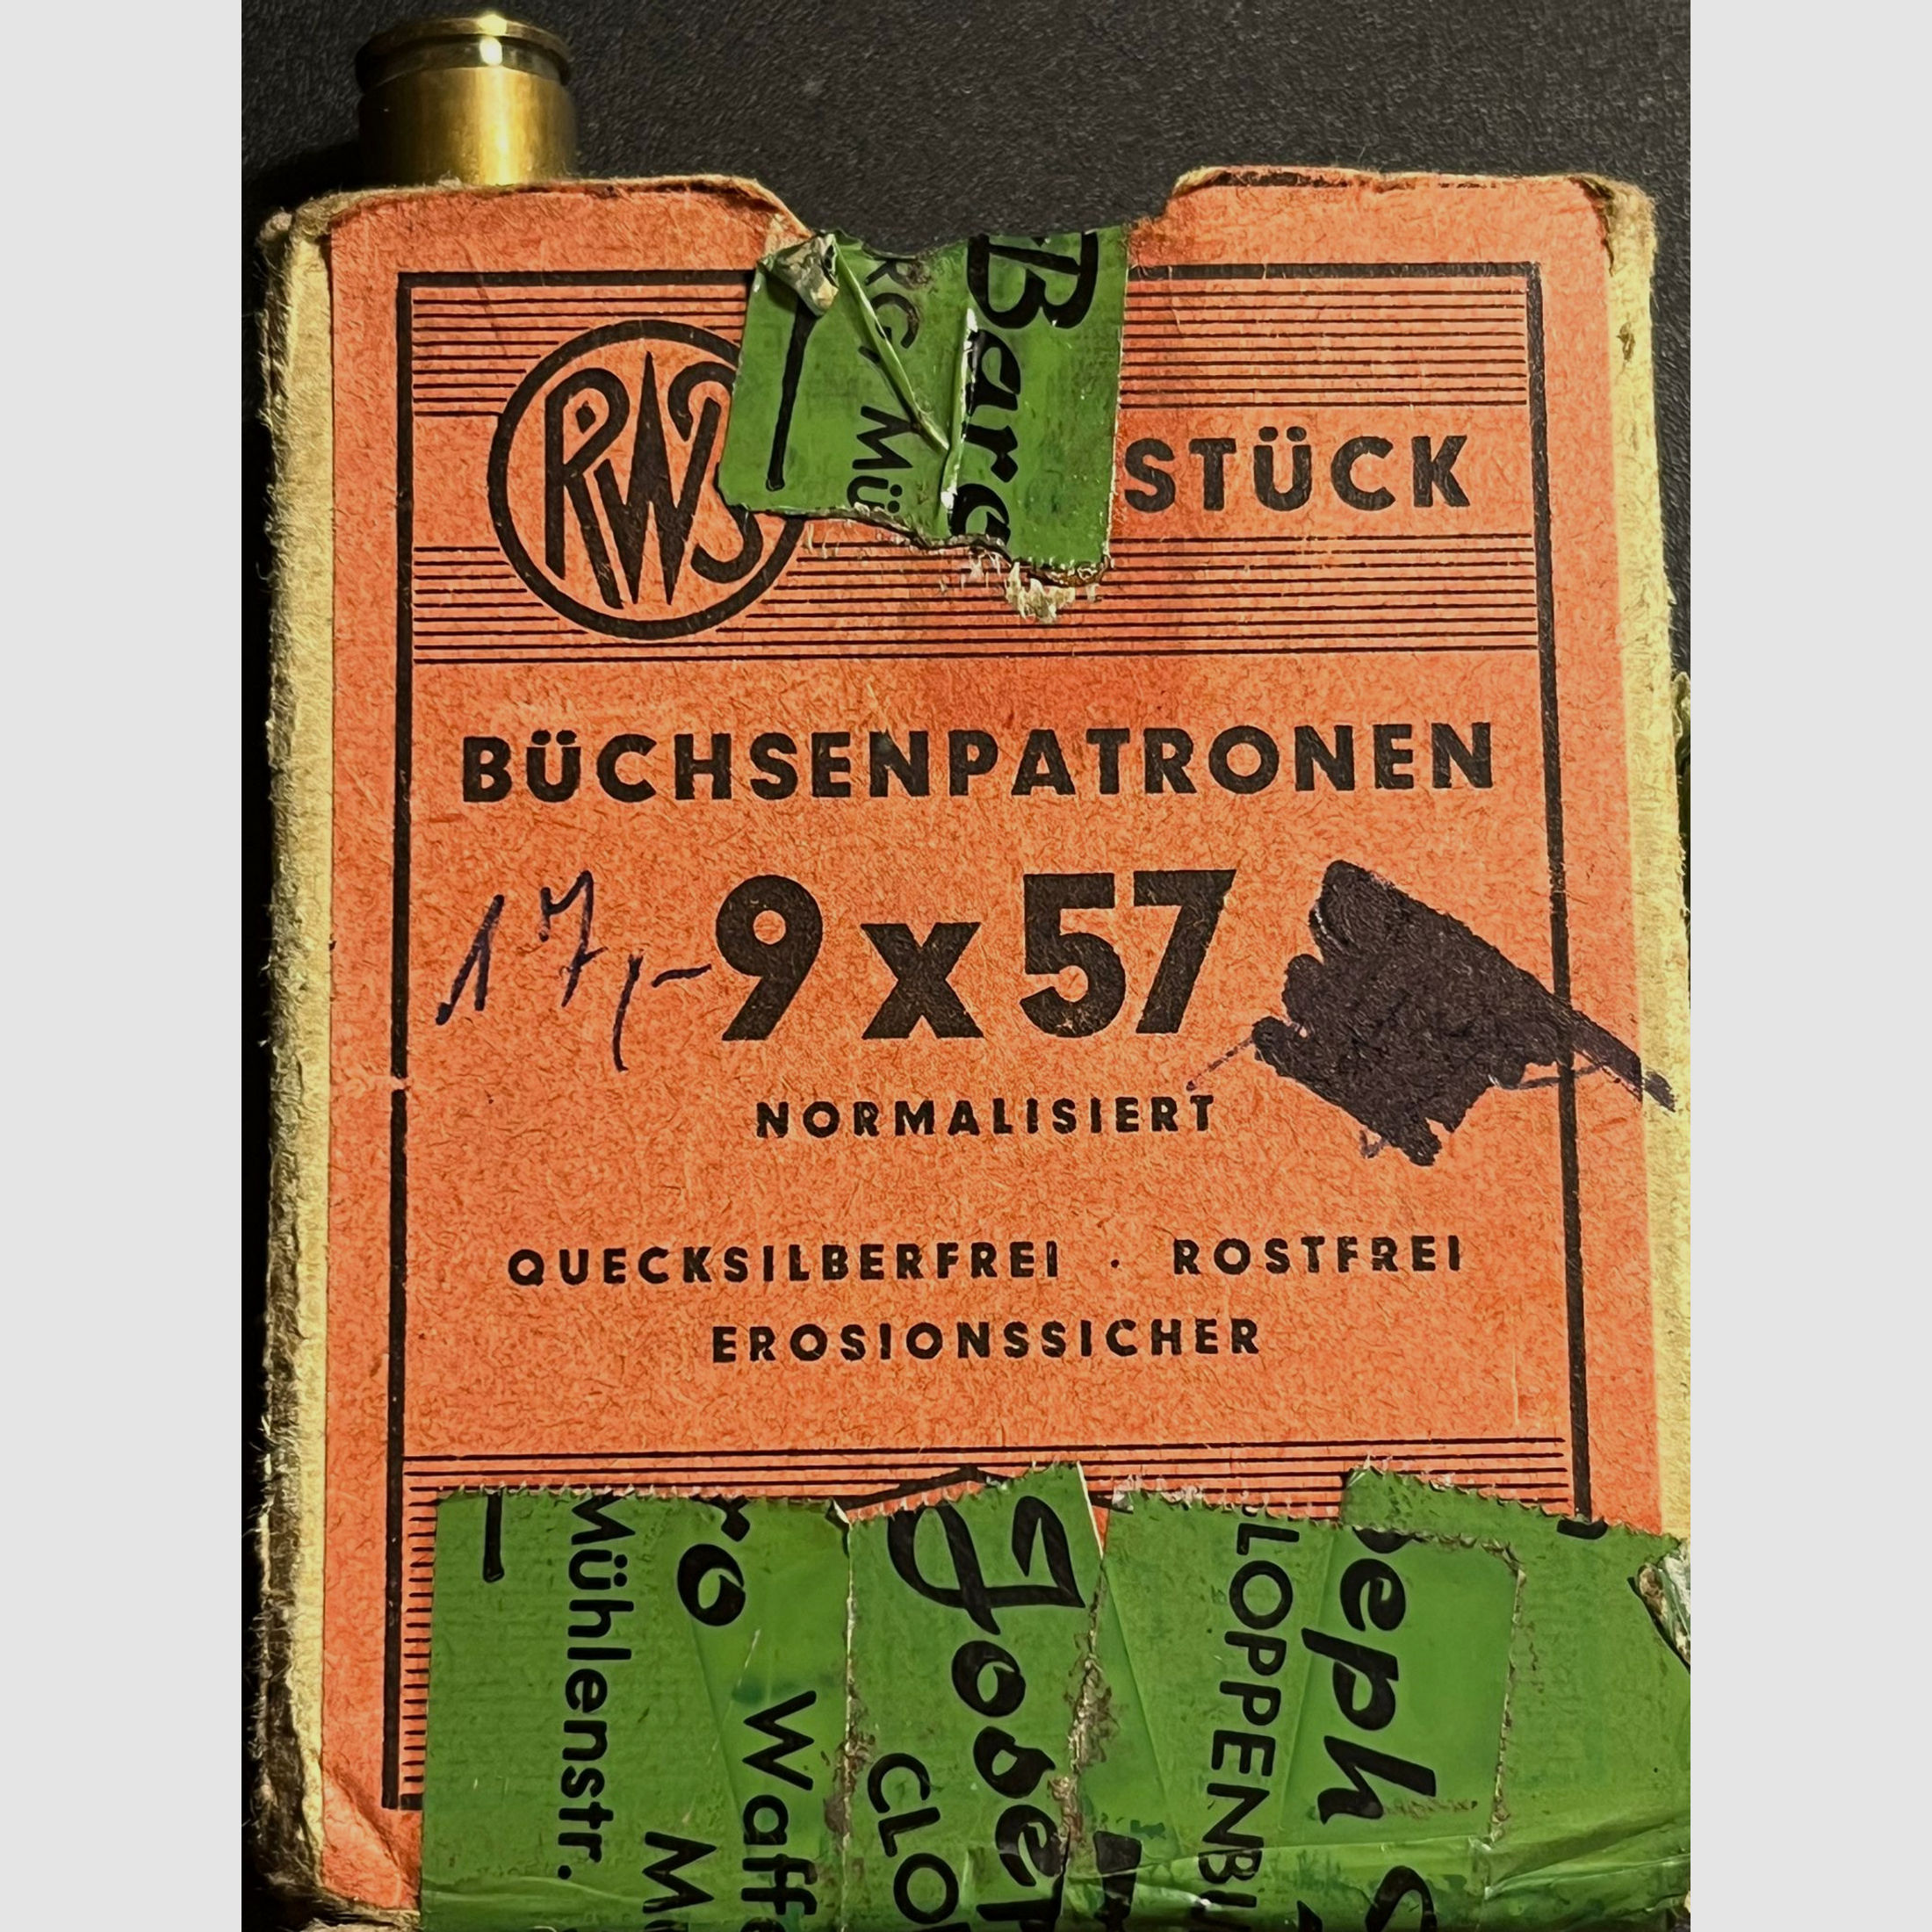 9 x 57 Mauser Büchsenpatronen Teilm. Rundkopf 18,2 g